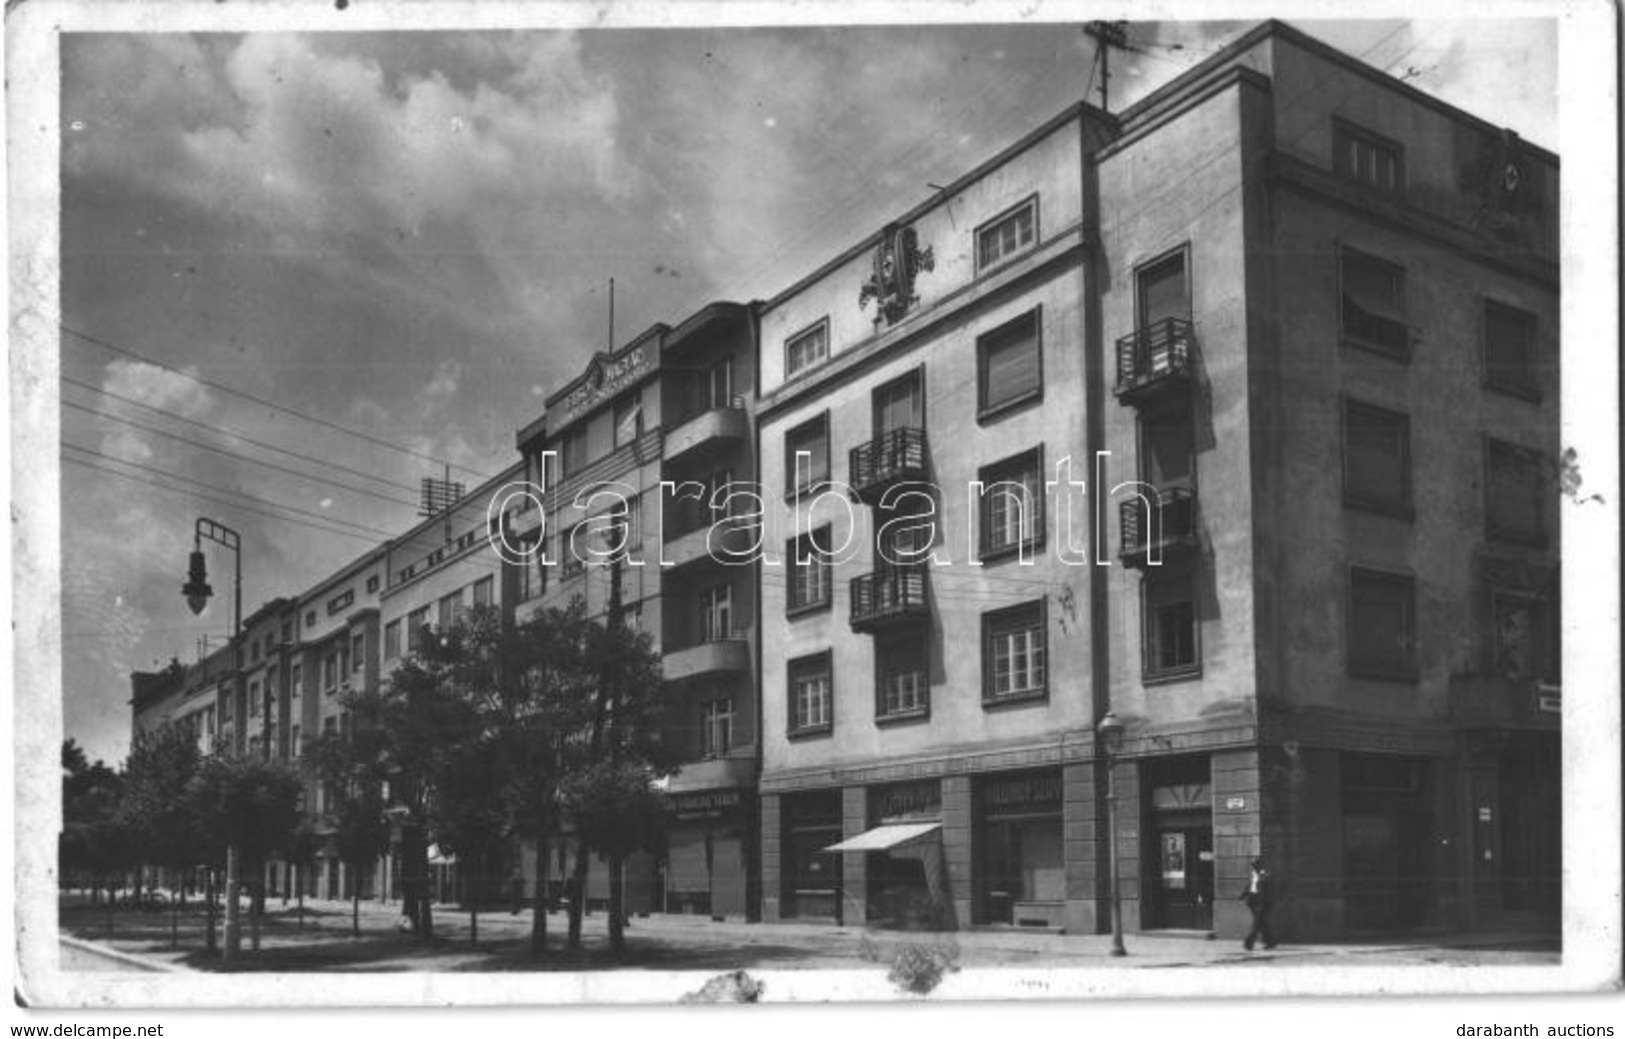 * 8 Db RÉGI Vajdasági és Szerb Városképes Lap / 8 Pre-1945 Voivodinan And Serbian Town-view Postcards - Zonder Classificatie